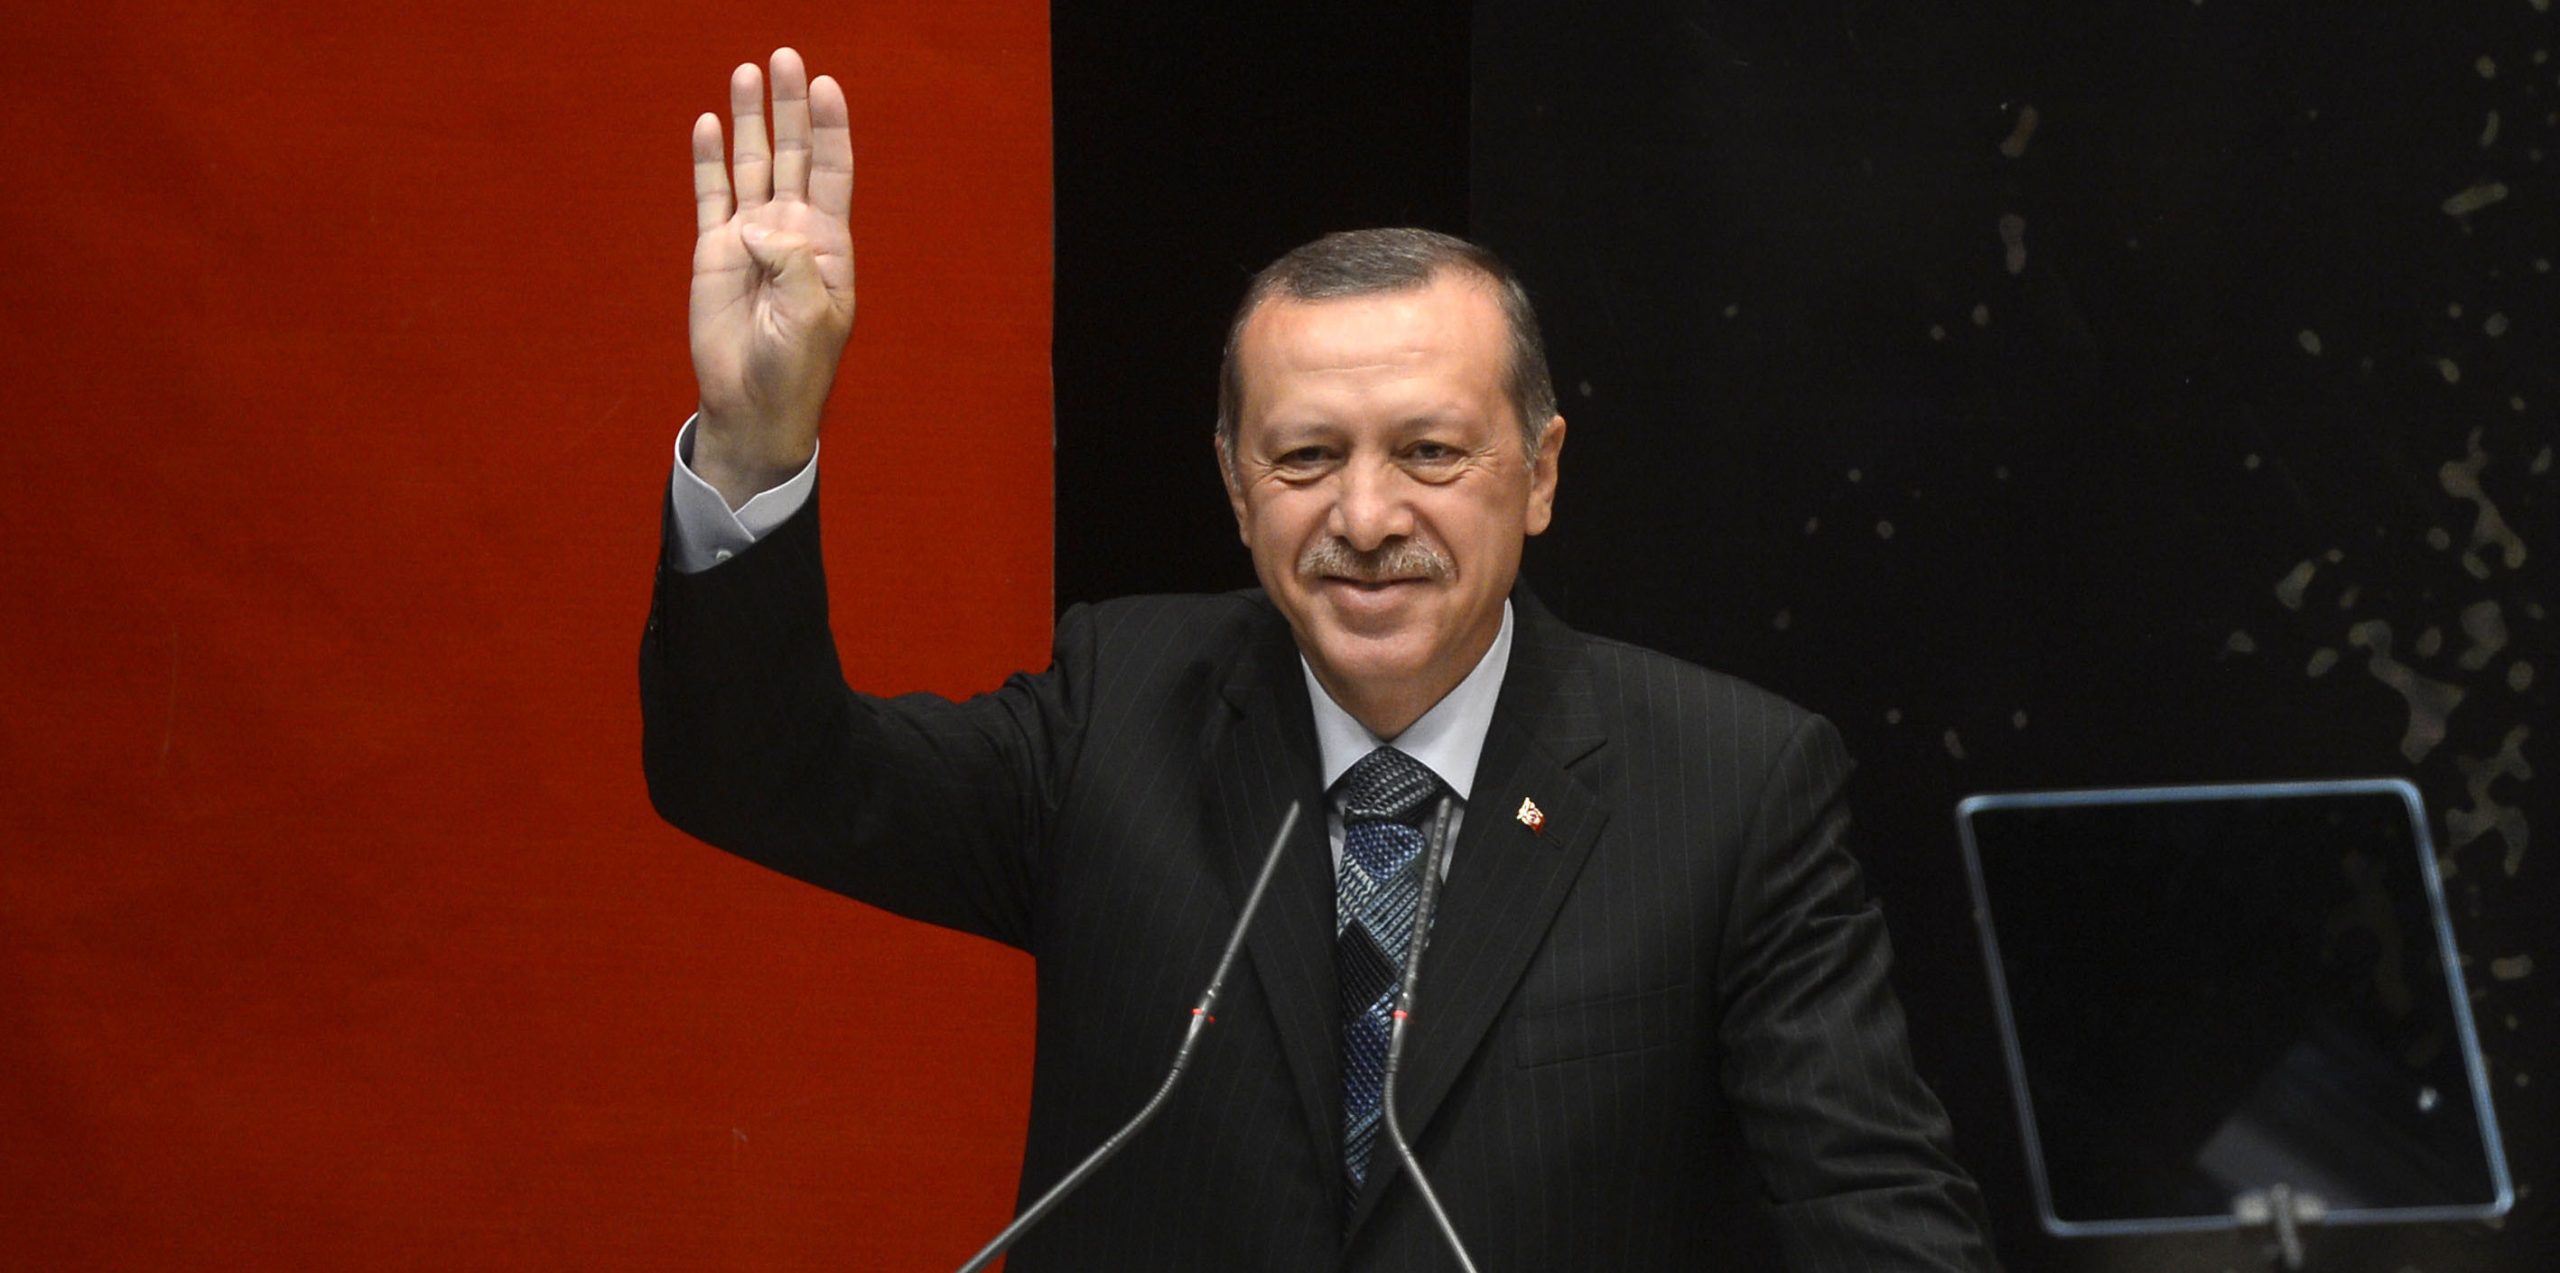 Aποκλιμακώνεται το τεταμένο κλίμα στις σχέσεις Γερμανίας- Τουρκίας